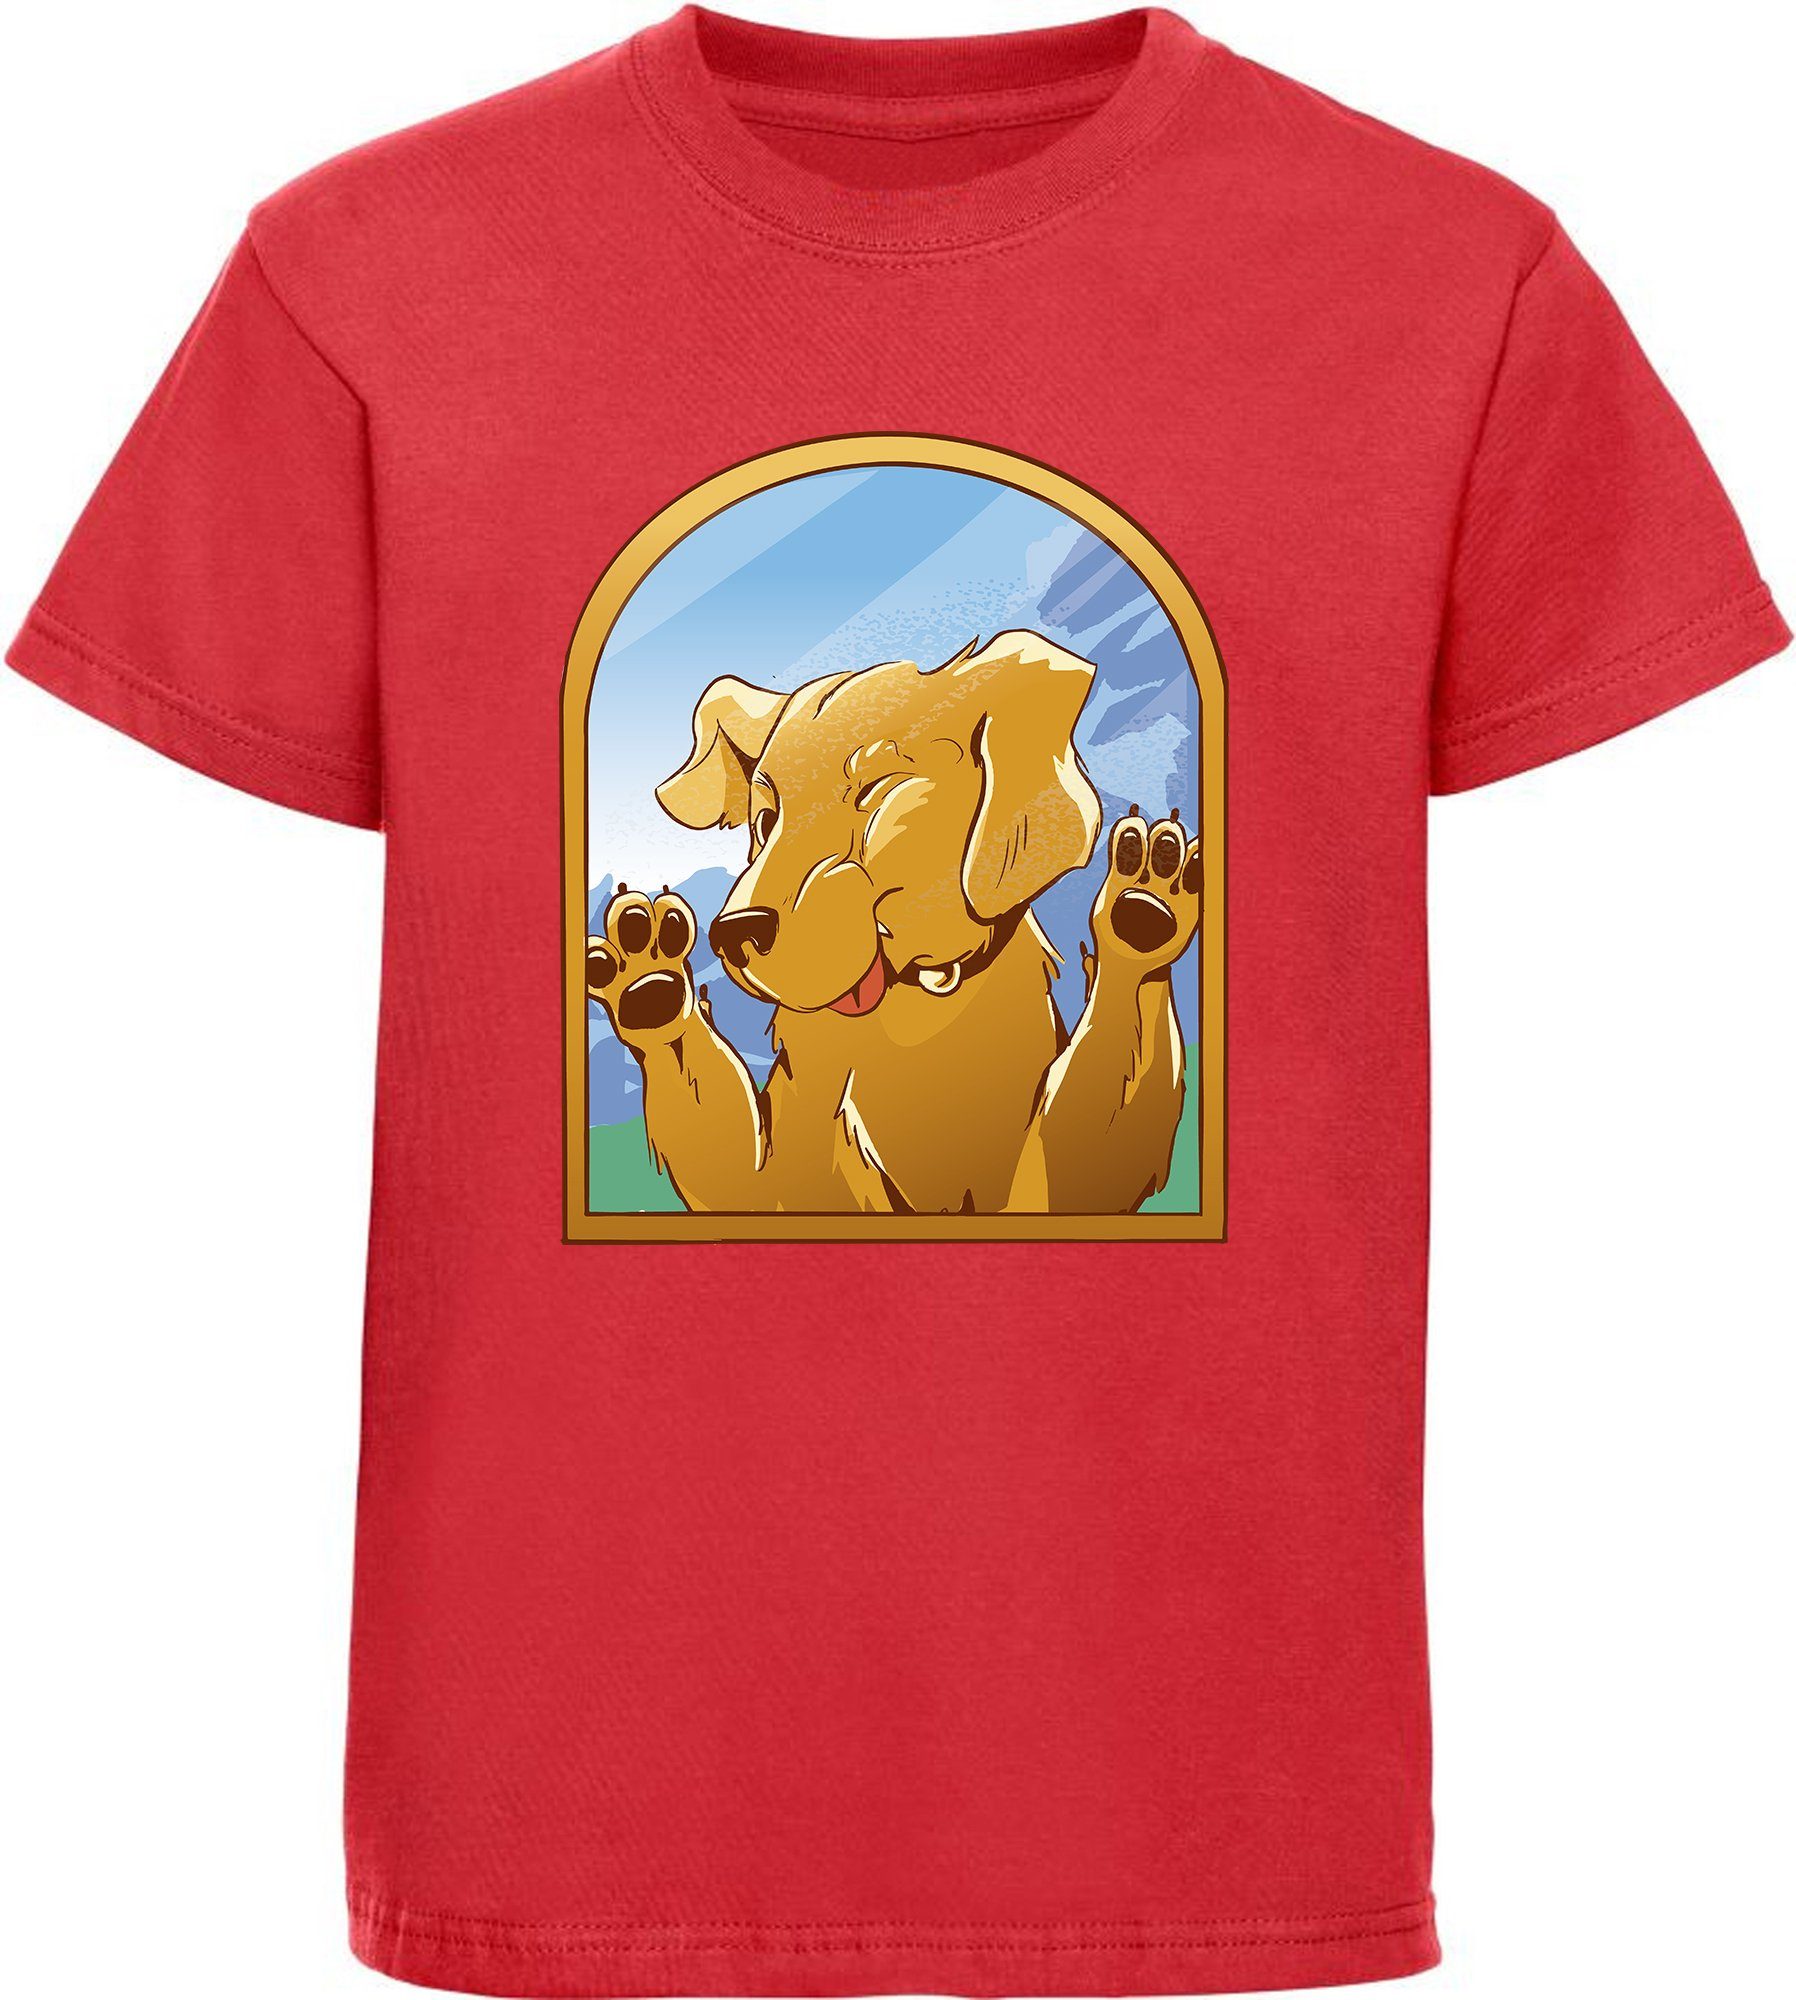 MyDesign24 Print-Shirt bedrucktes Kinder Hunde T-Shirt - Labrador gegen Fenster Baumwollshirt mit Aufdruck, i222 rot